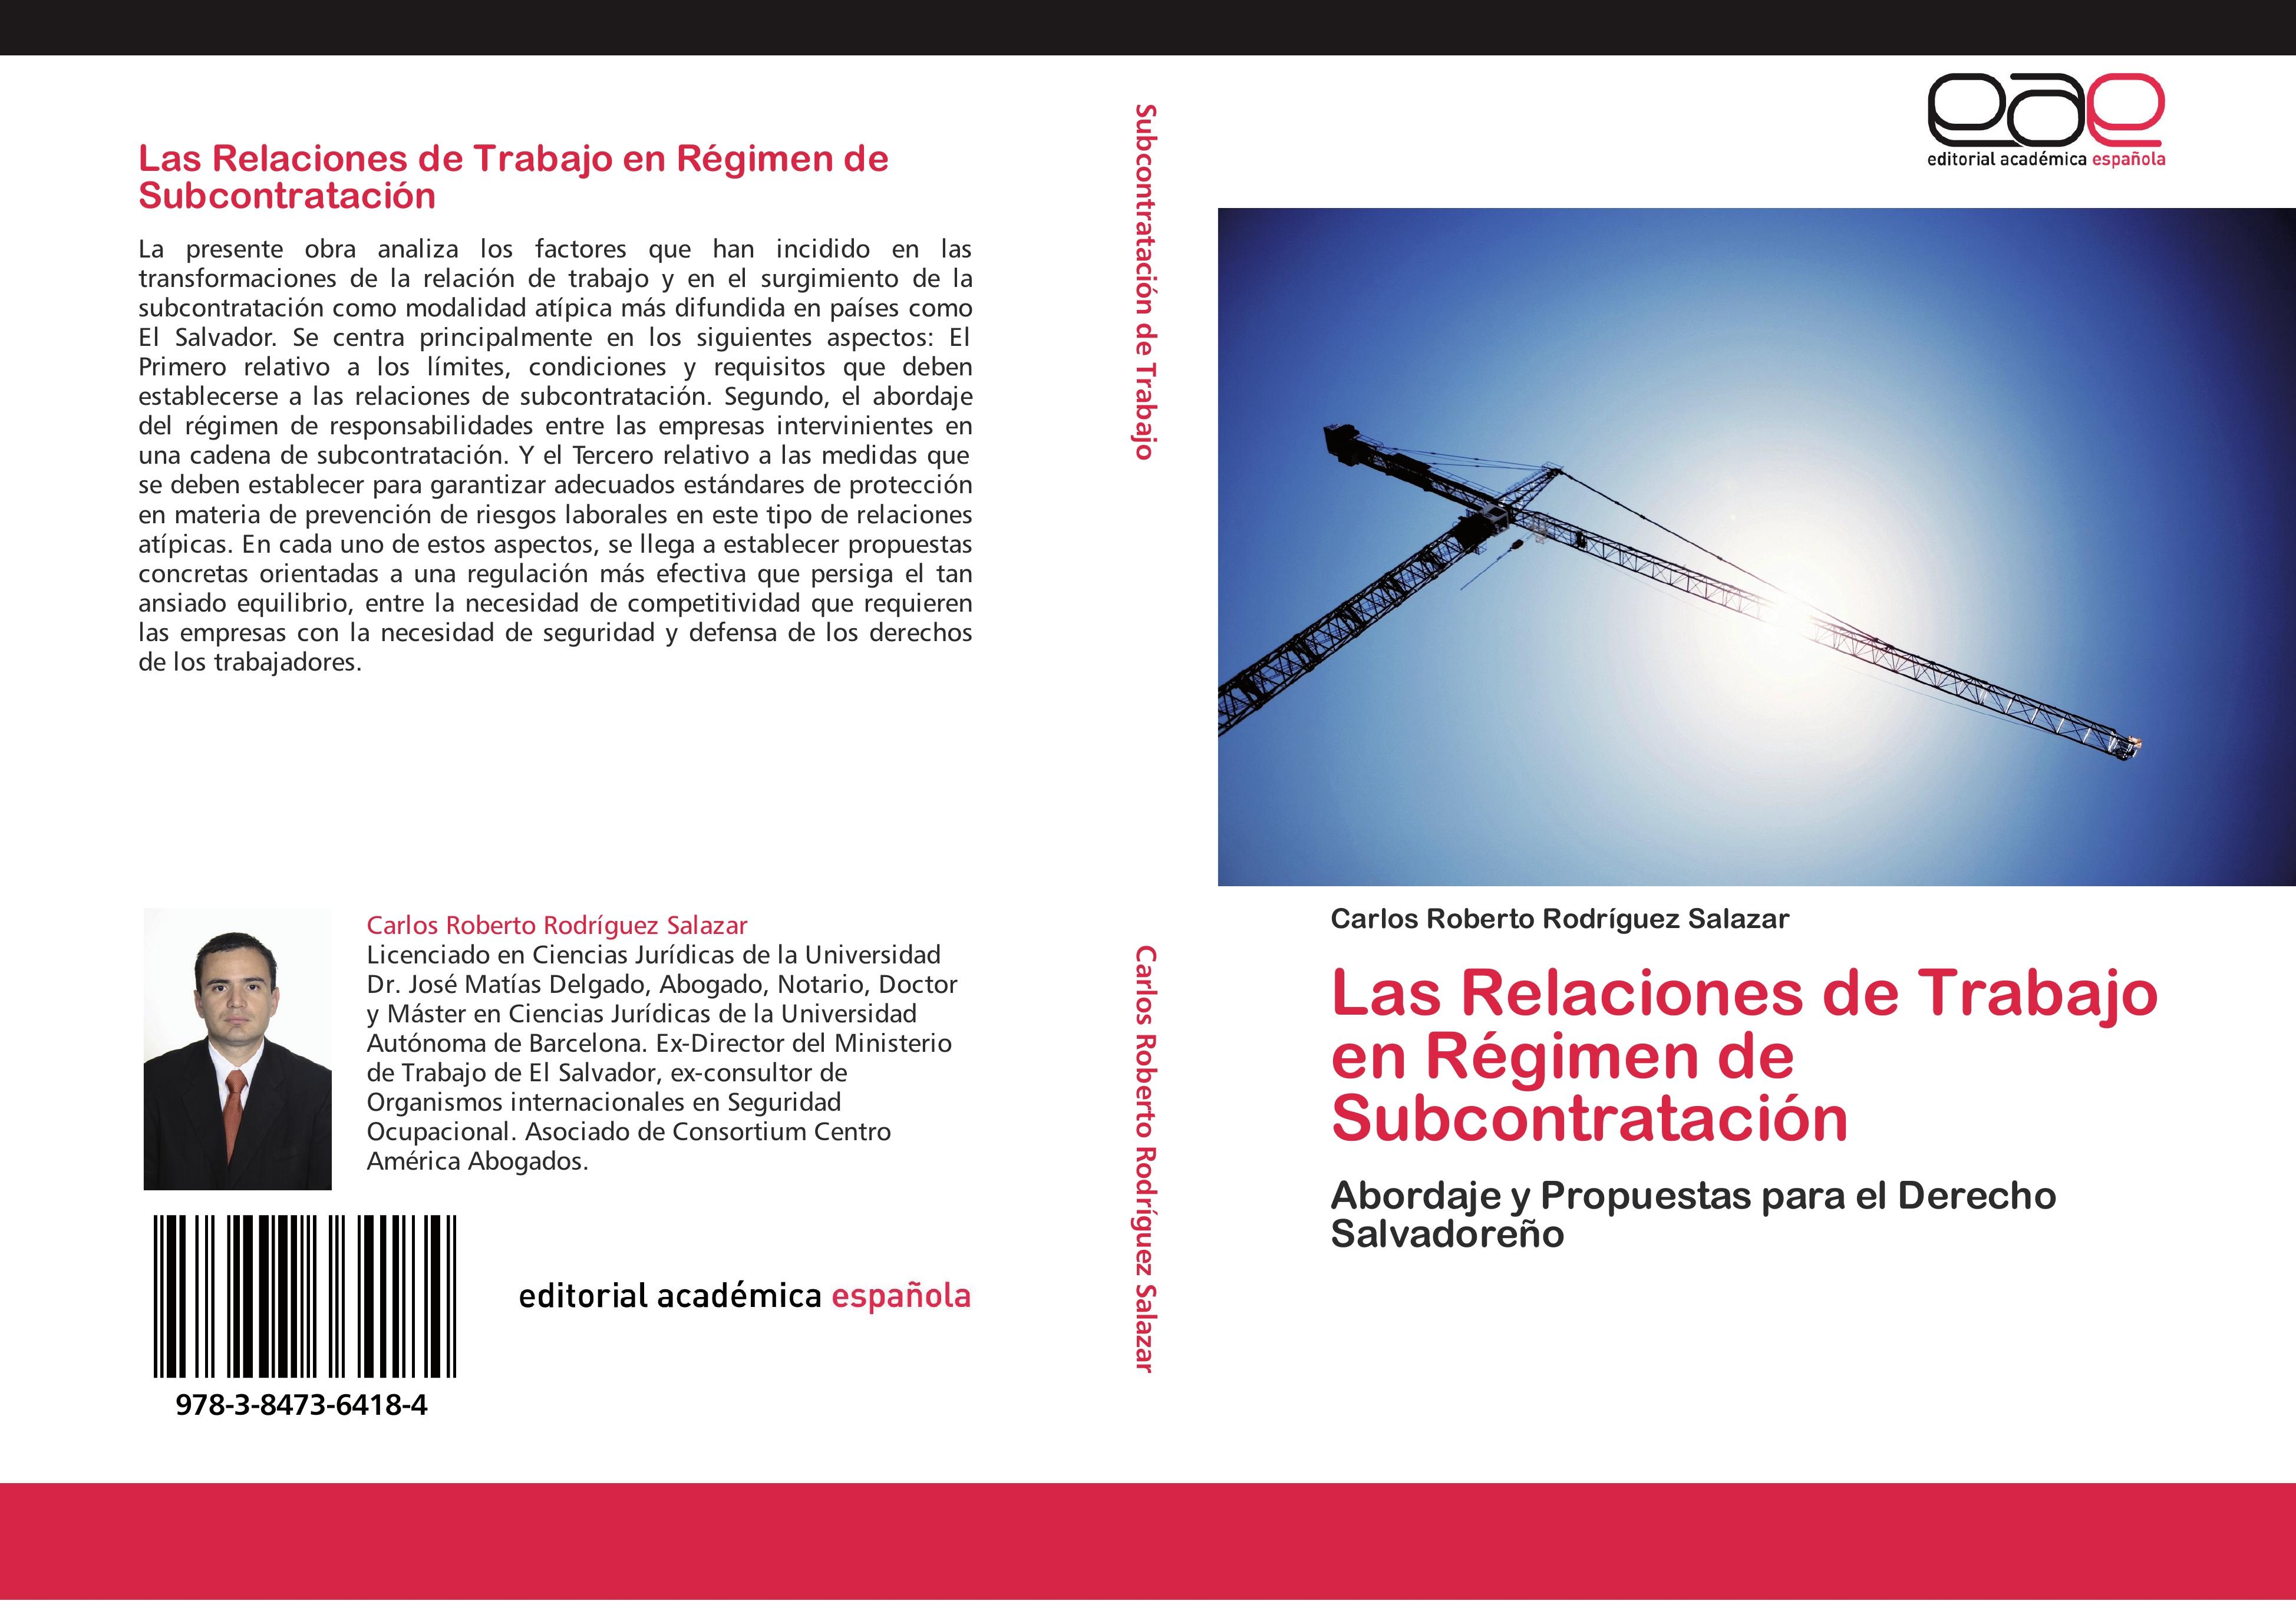 Las Relaciones de Trabajo en Régimen de Subcontratación - Carlos Roberto Rodríguez Salazar